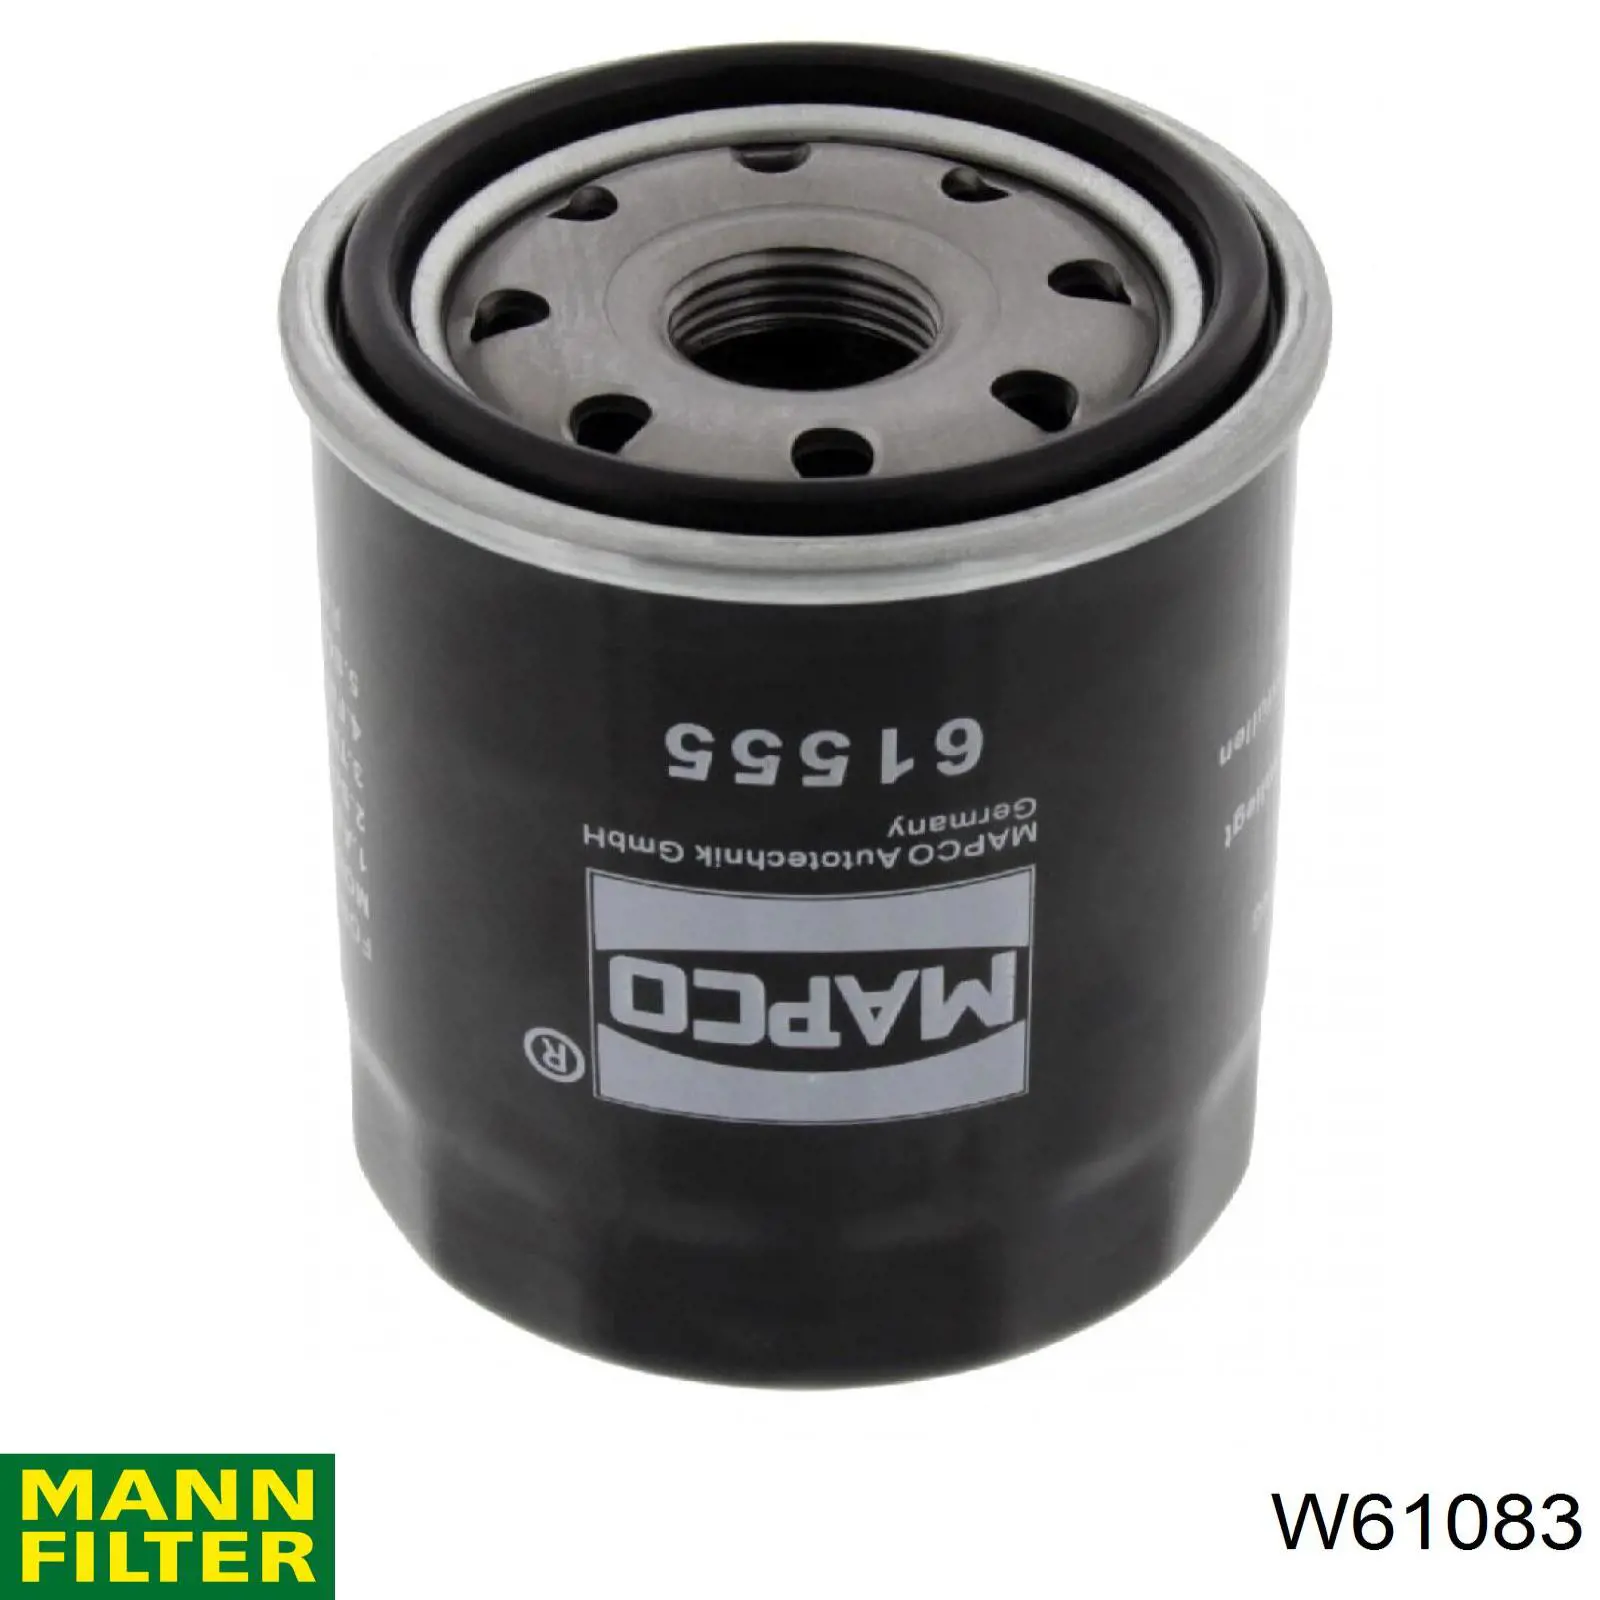 Filtro de aceite W61083 Mann-Filter